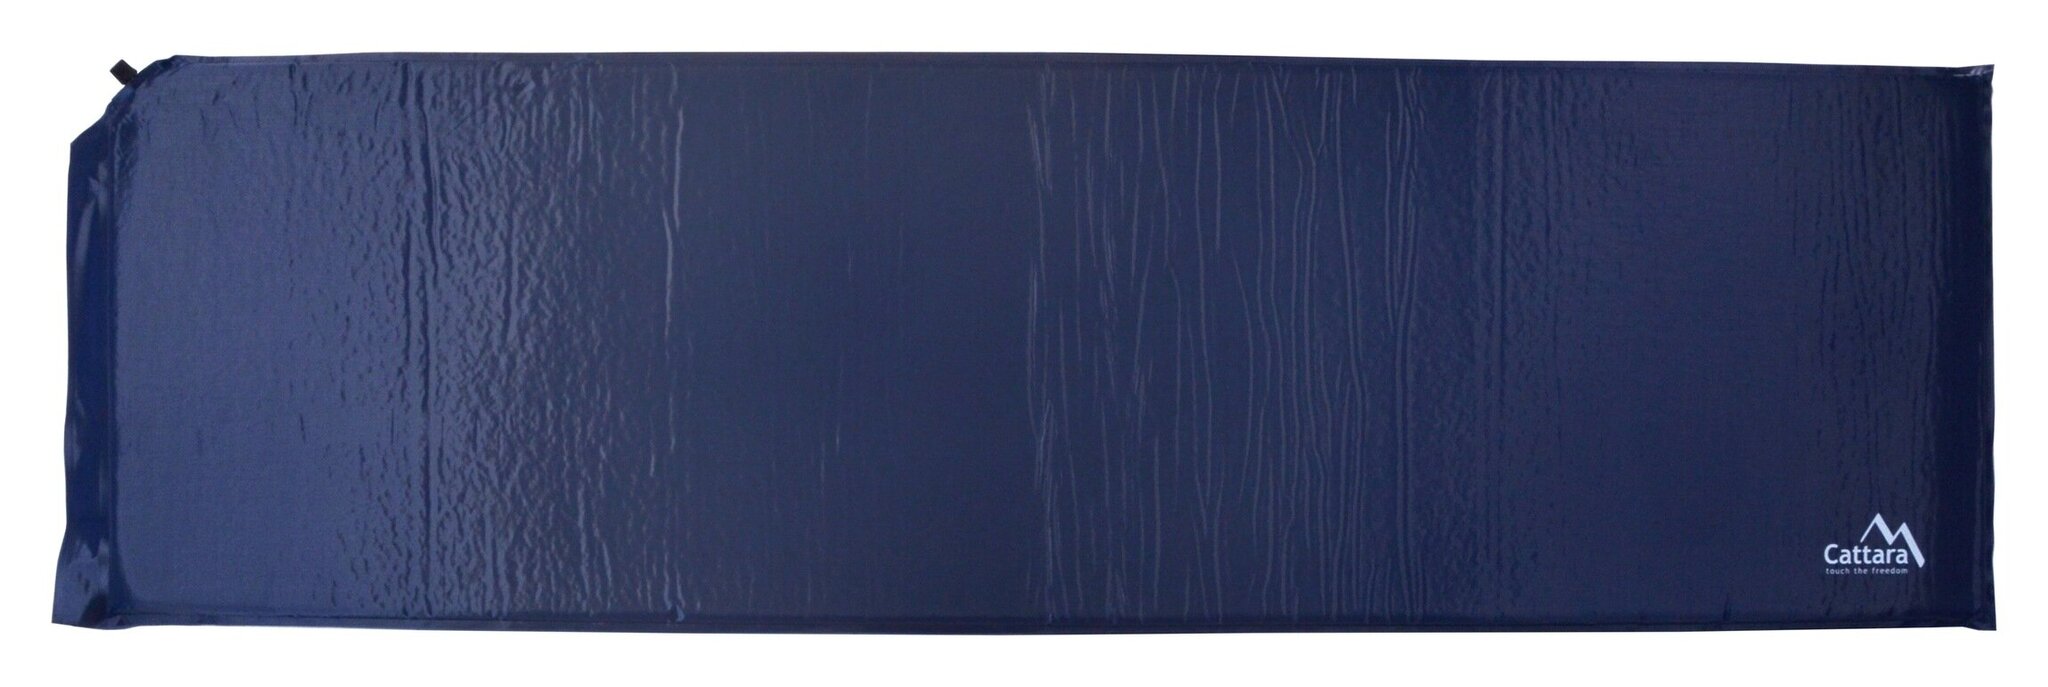 Savaime prisipučiantis kilimėlis Cattara – mėlynas, 186 x 53 x 2,5 cm kaina ir informacija | Pripučiami čiužiniai ir baldai | pigu.lt